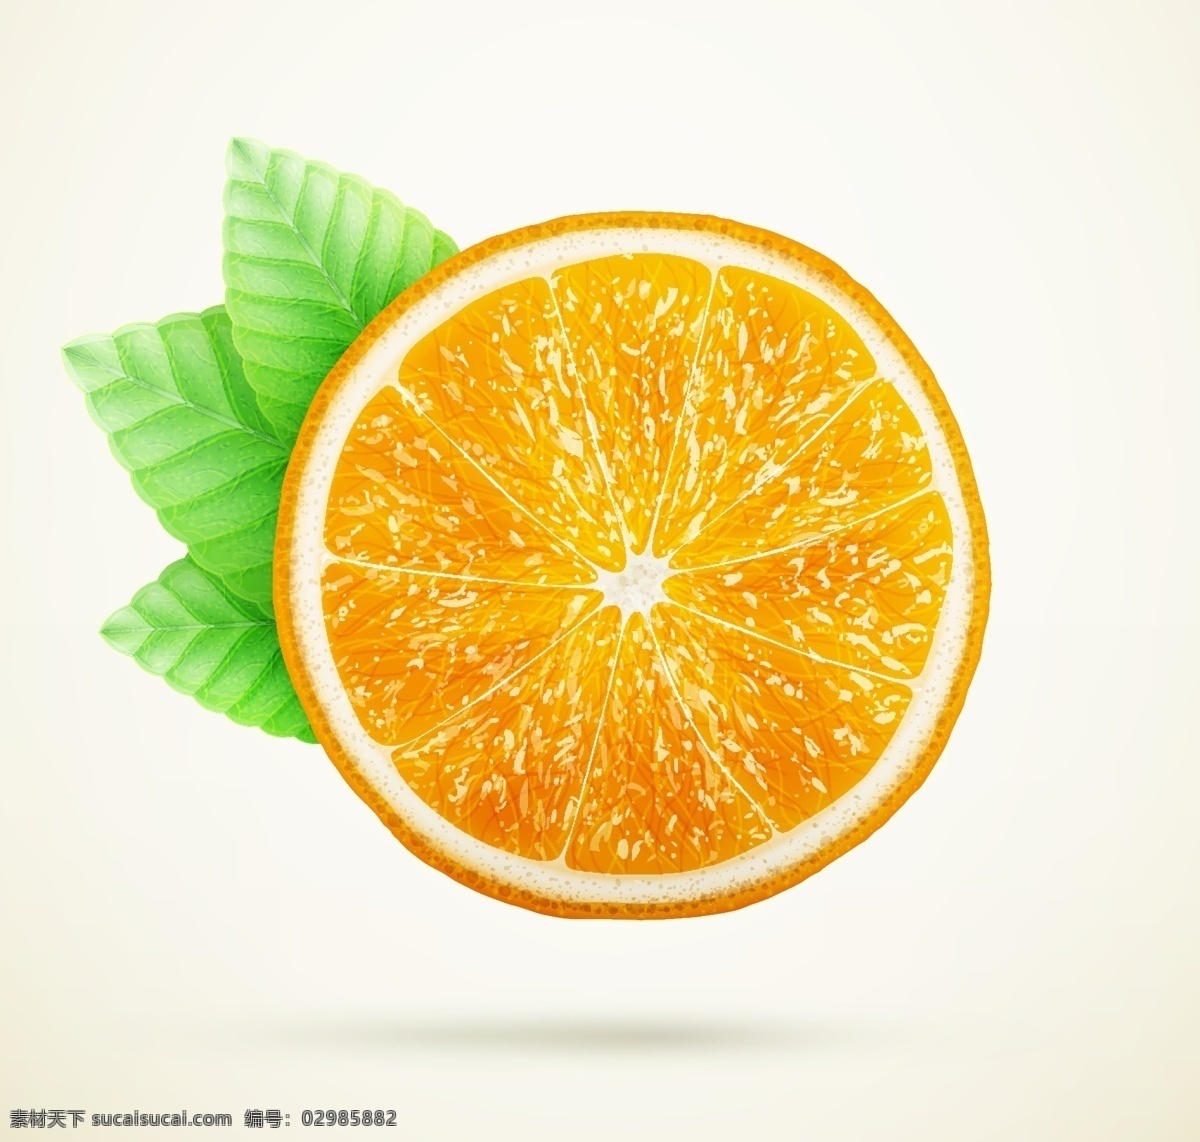 橙子切片 橙子片 橙子 橙汁 橙汁广告 水果切片 果汁 饮料